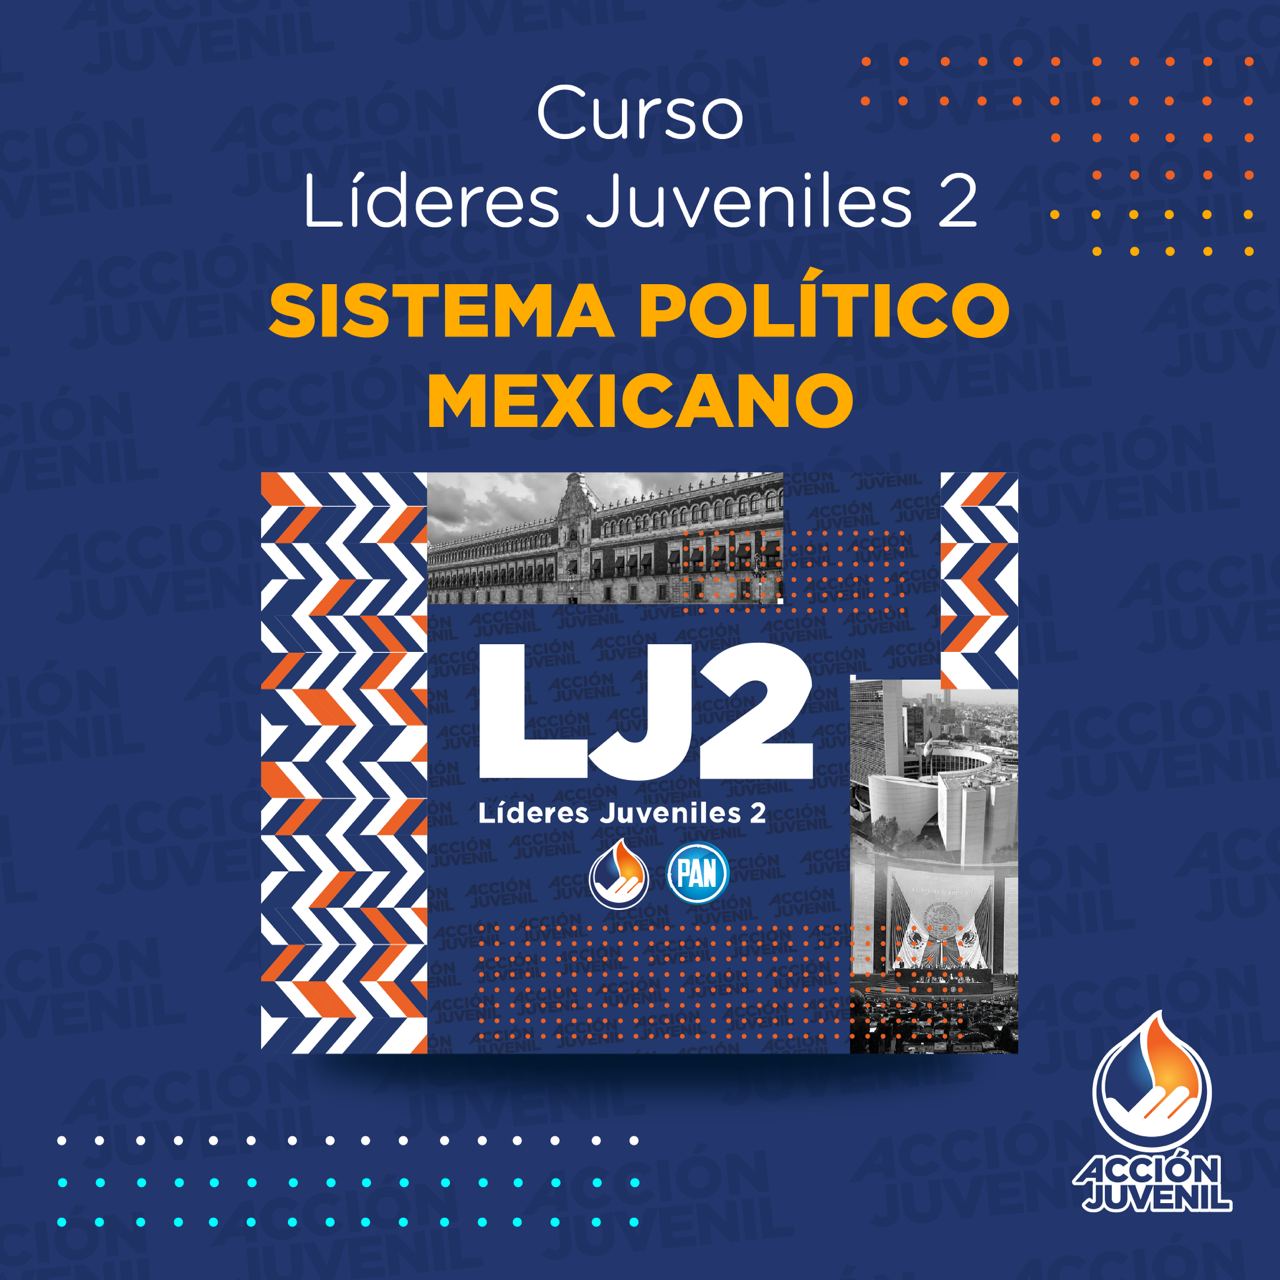 Curso Líderes Juveniles 2 Sistema Político Mexicano San Luis Potosí, SLP 06/02/22